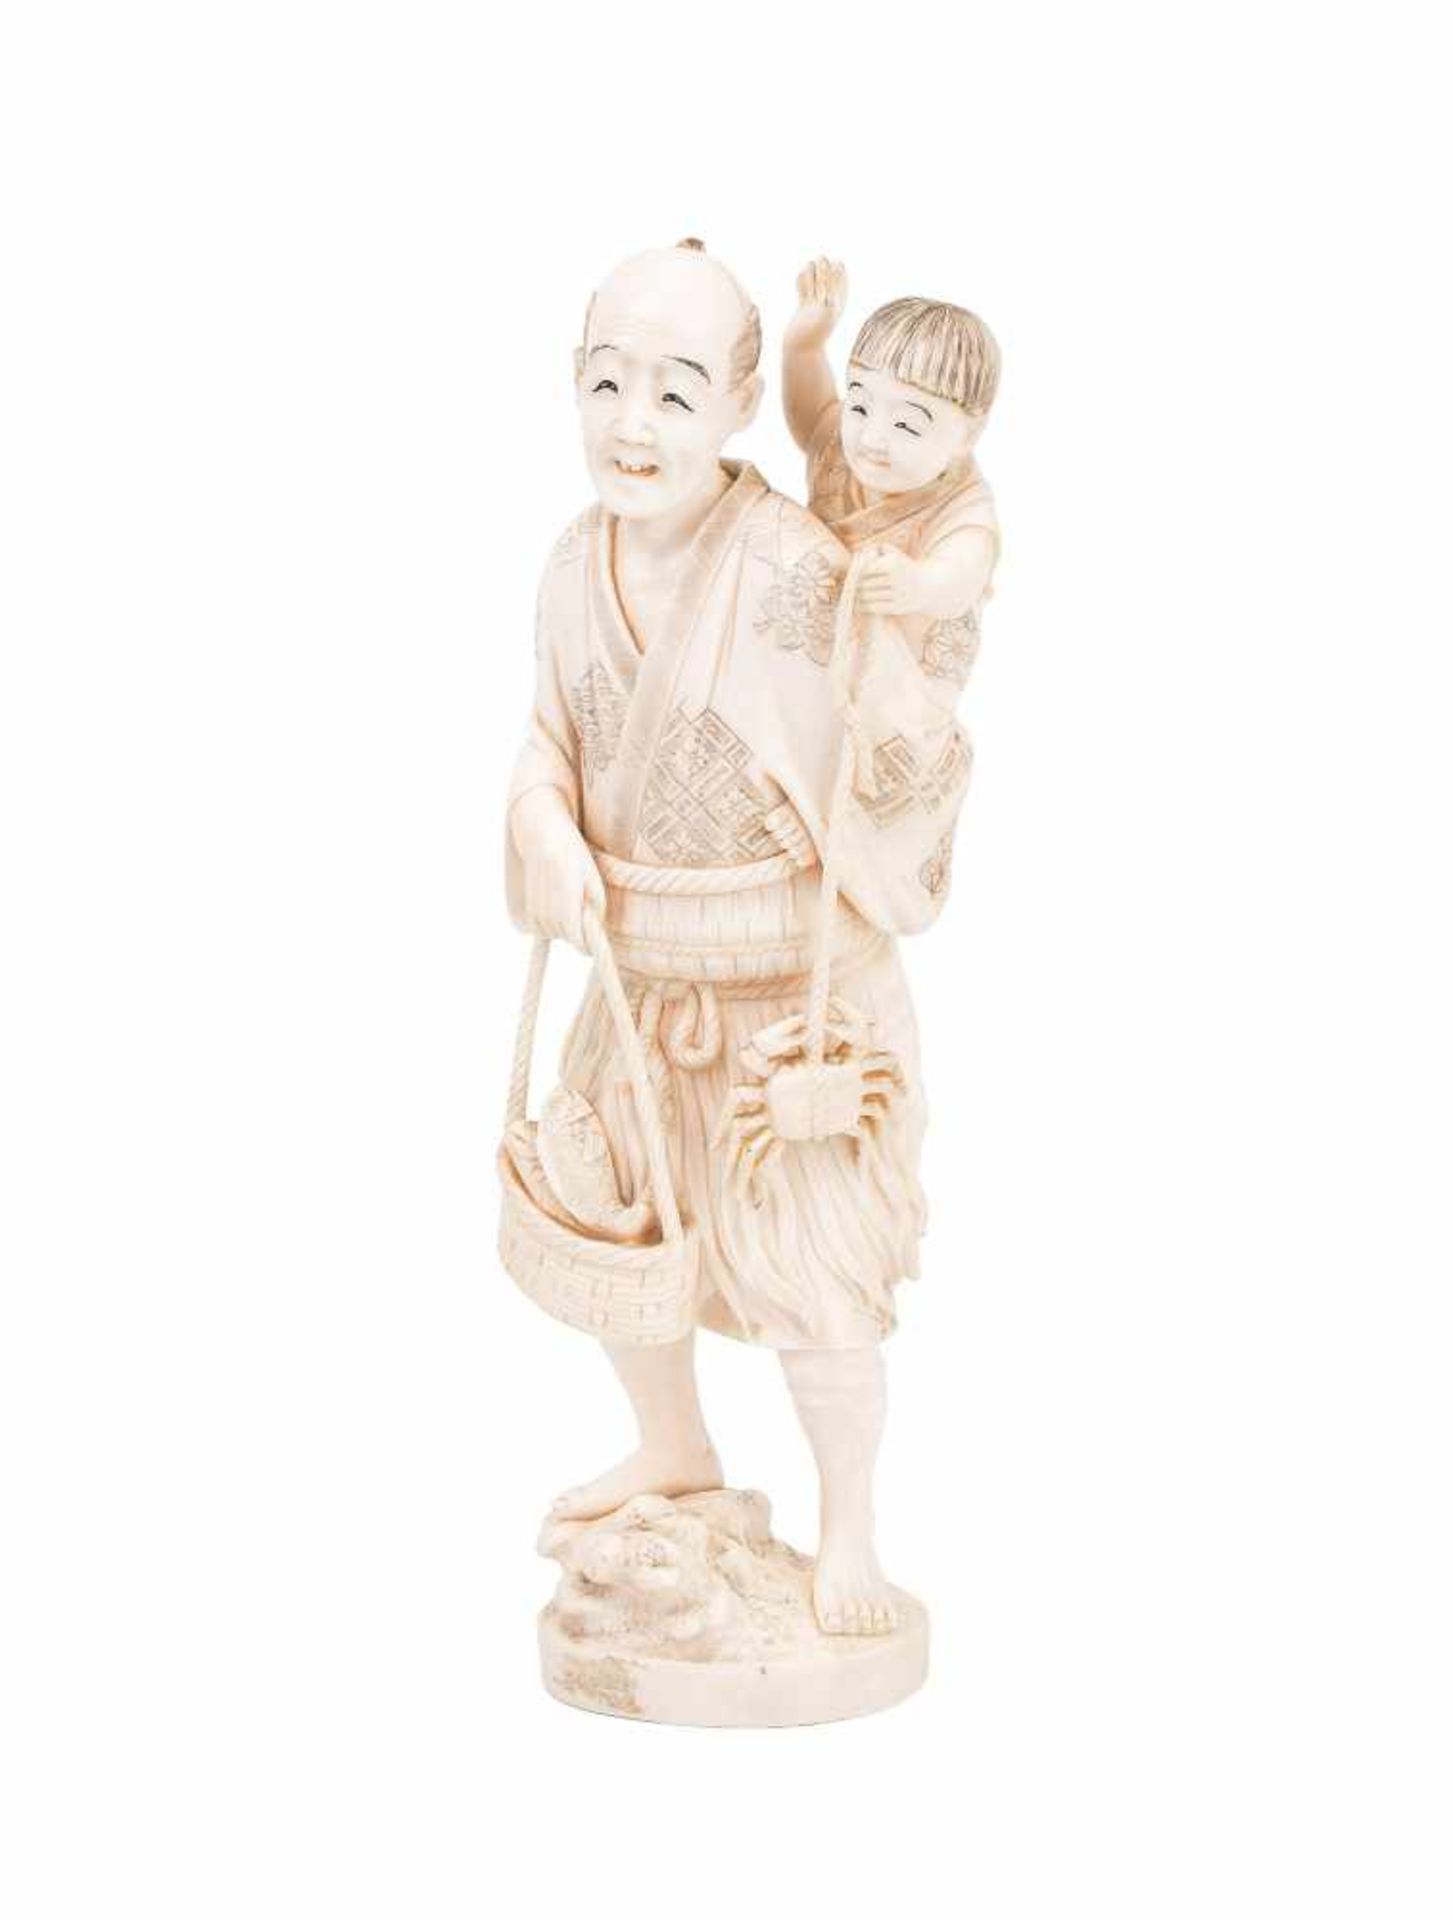 Okimono eines Mannes mit KindJapan, Anfang 20.Jh. Elfenbein. Zufriedener Mann mit gefülltem